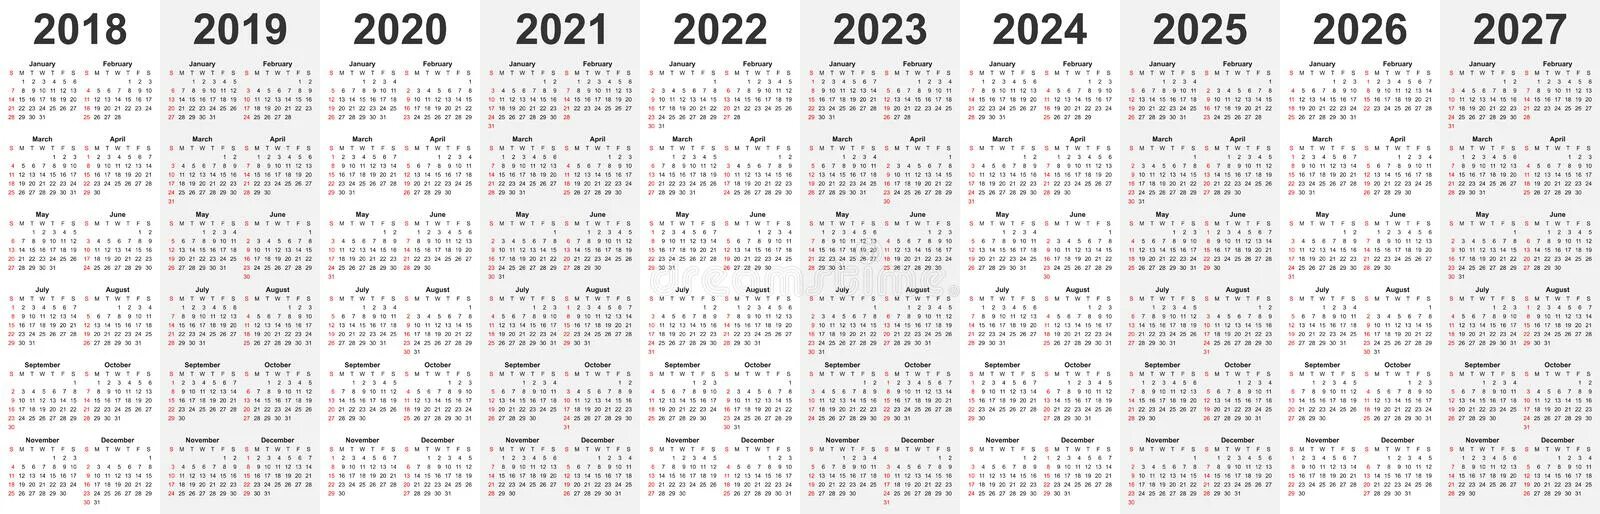 Календарь 2027г. Календарь 2019 2020 2021 2022. 2019 2020 2021 2022 2023. (−2021) ( − 2021 ) + + (−2020) ( − 2020 ) + + (−2019) ( − 2019 ) + + ... + + 2022 2022 + + 2023 2023 .. 2020 2021 2022 2023 2024 2025.